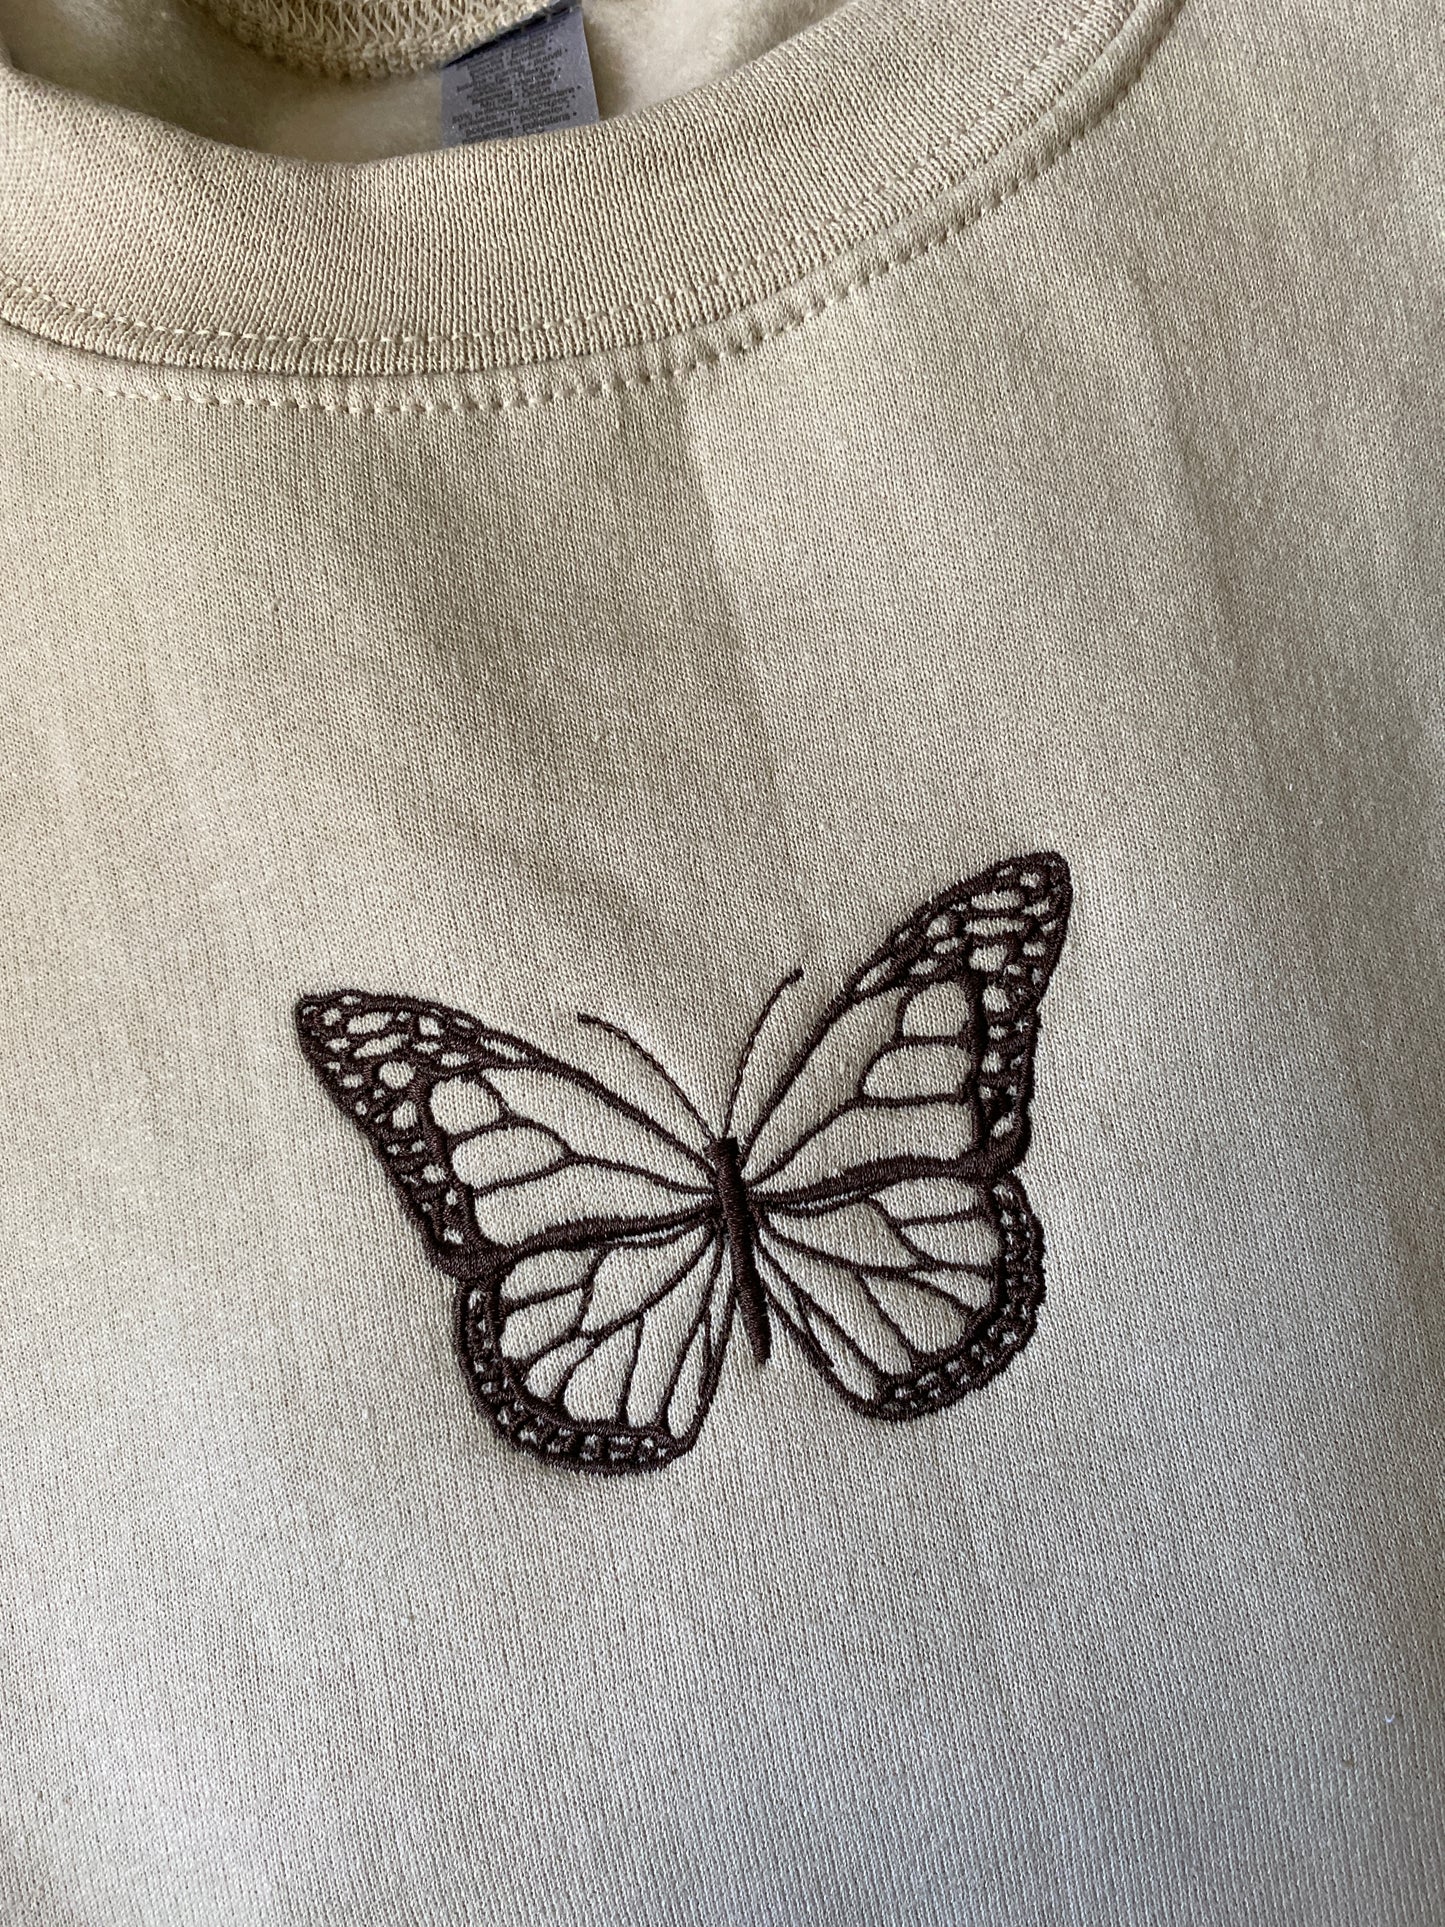 Butterfly Sweatshirt Small